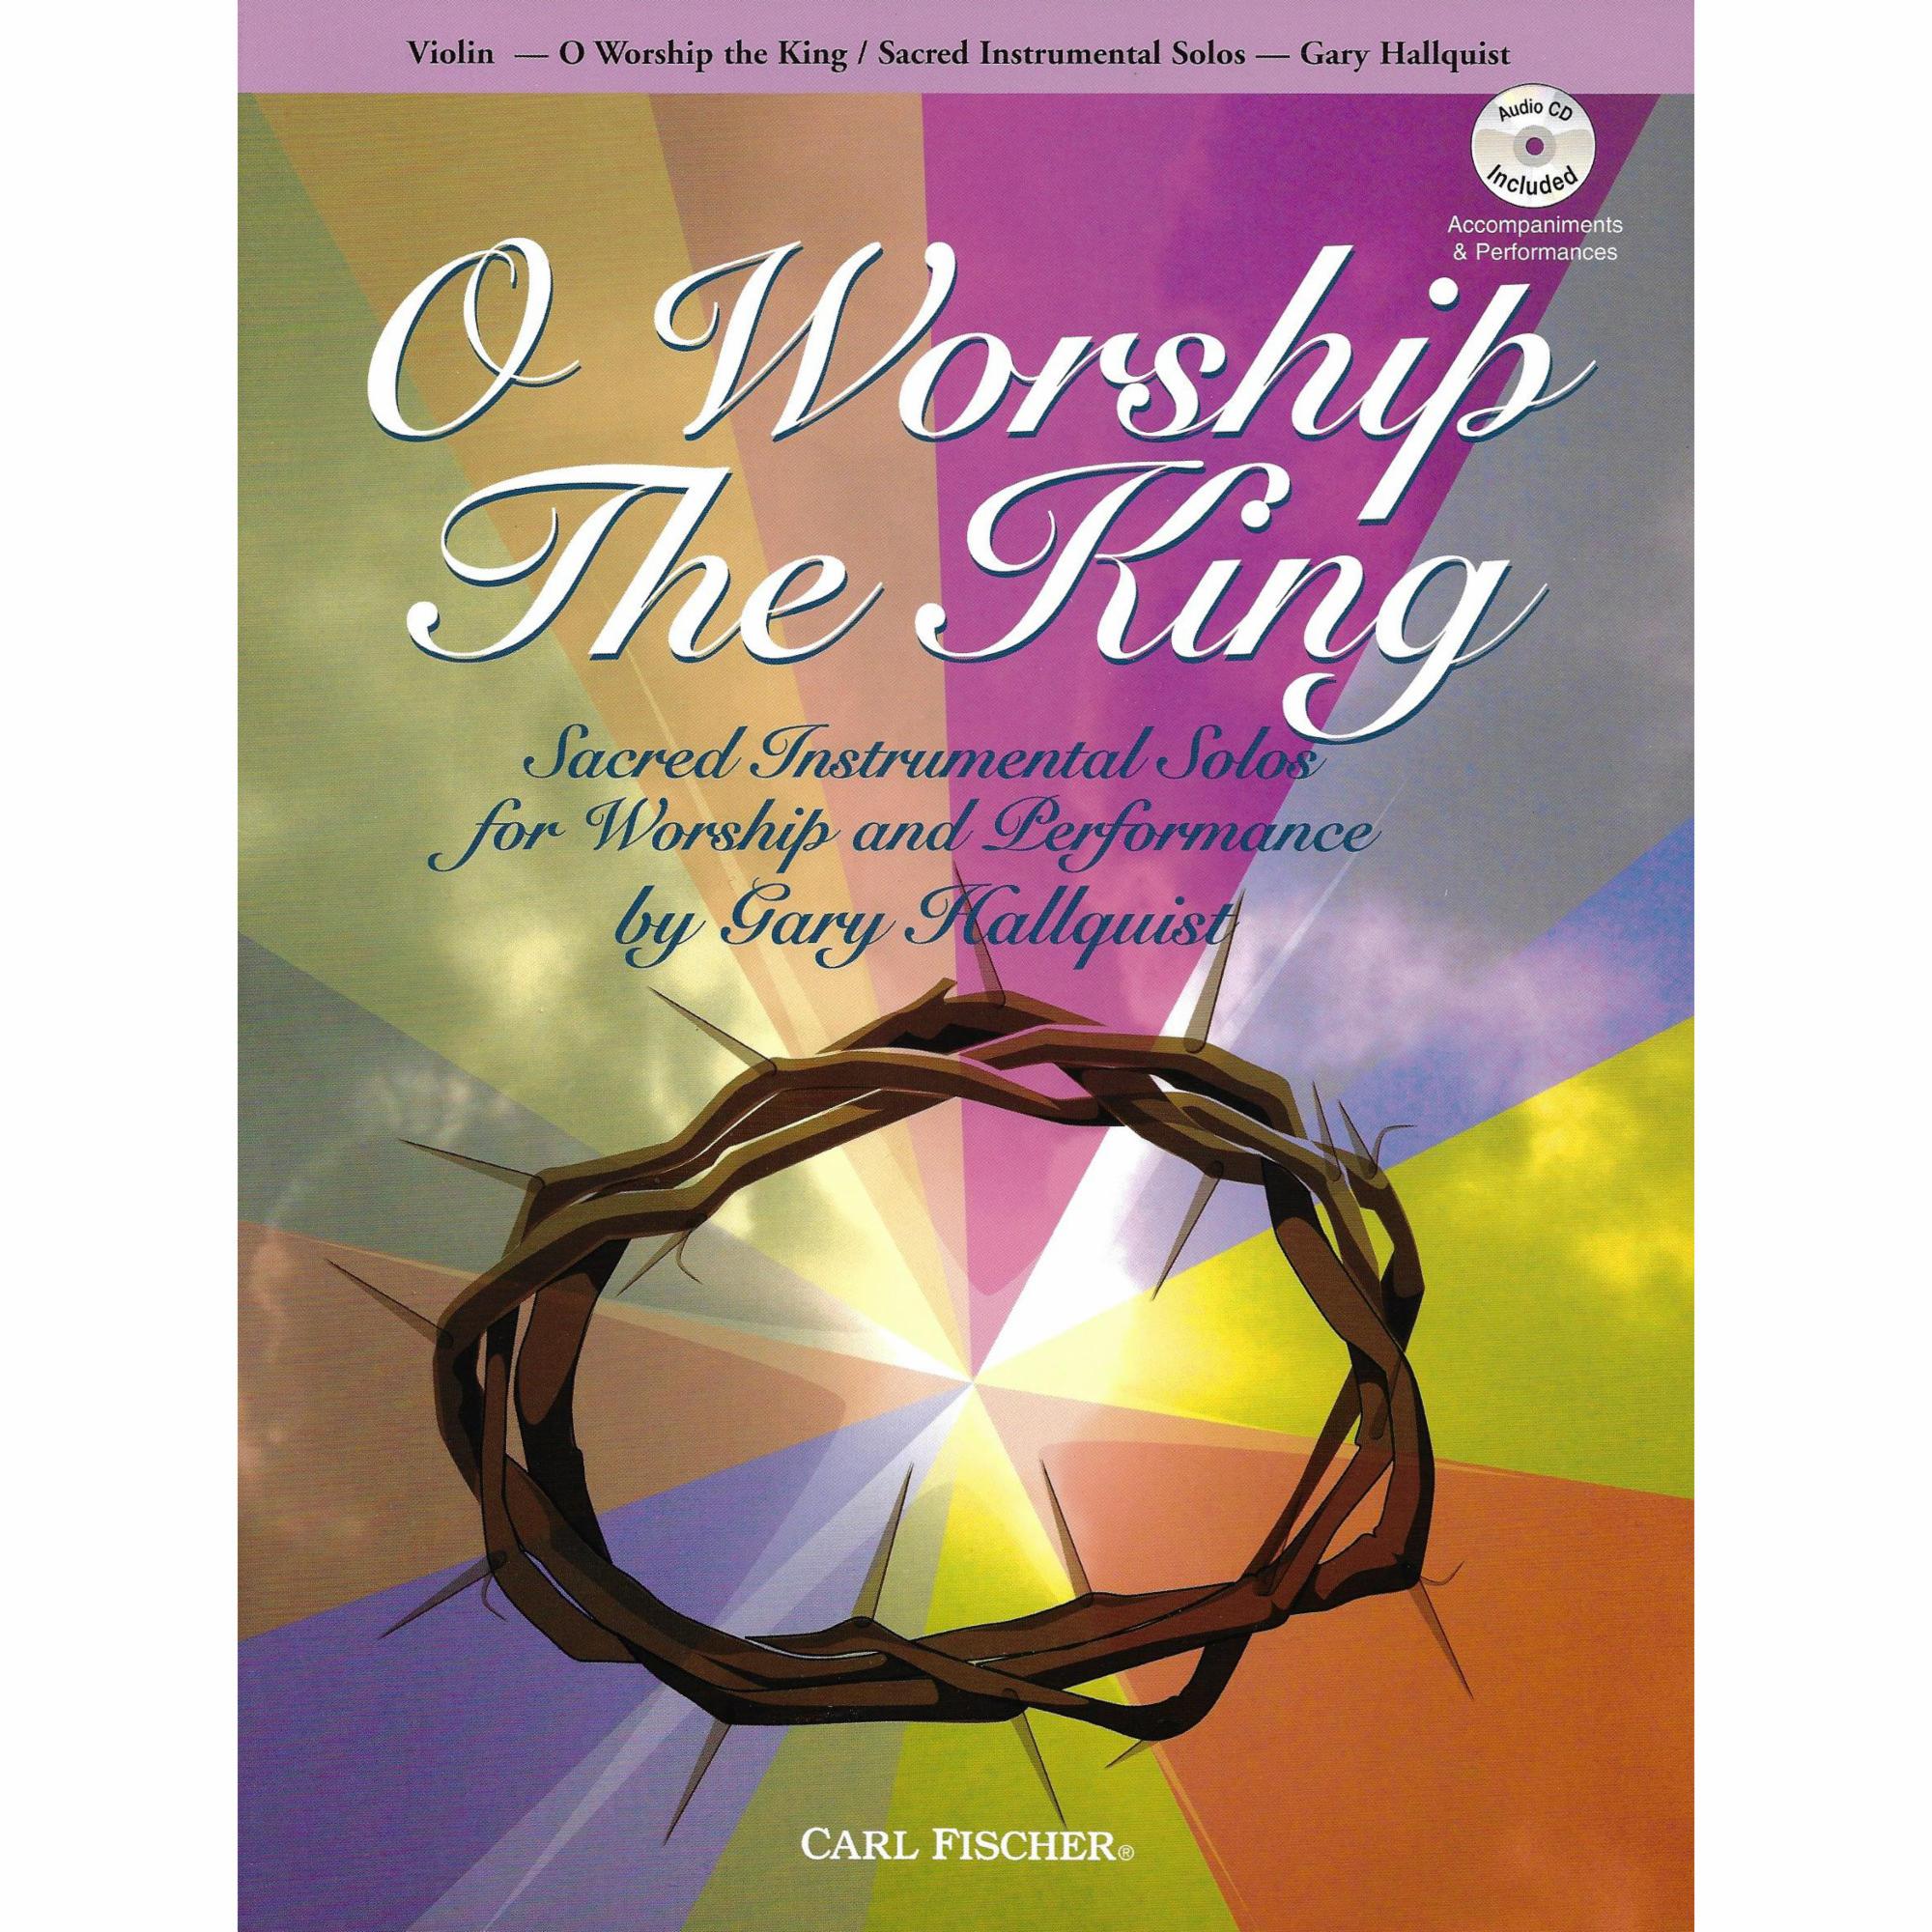 O Worship The King for Violin